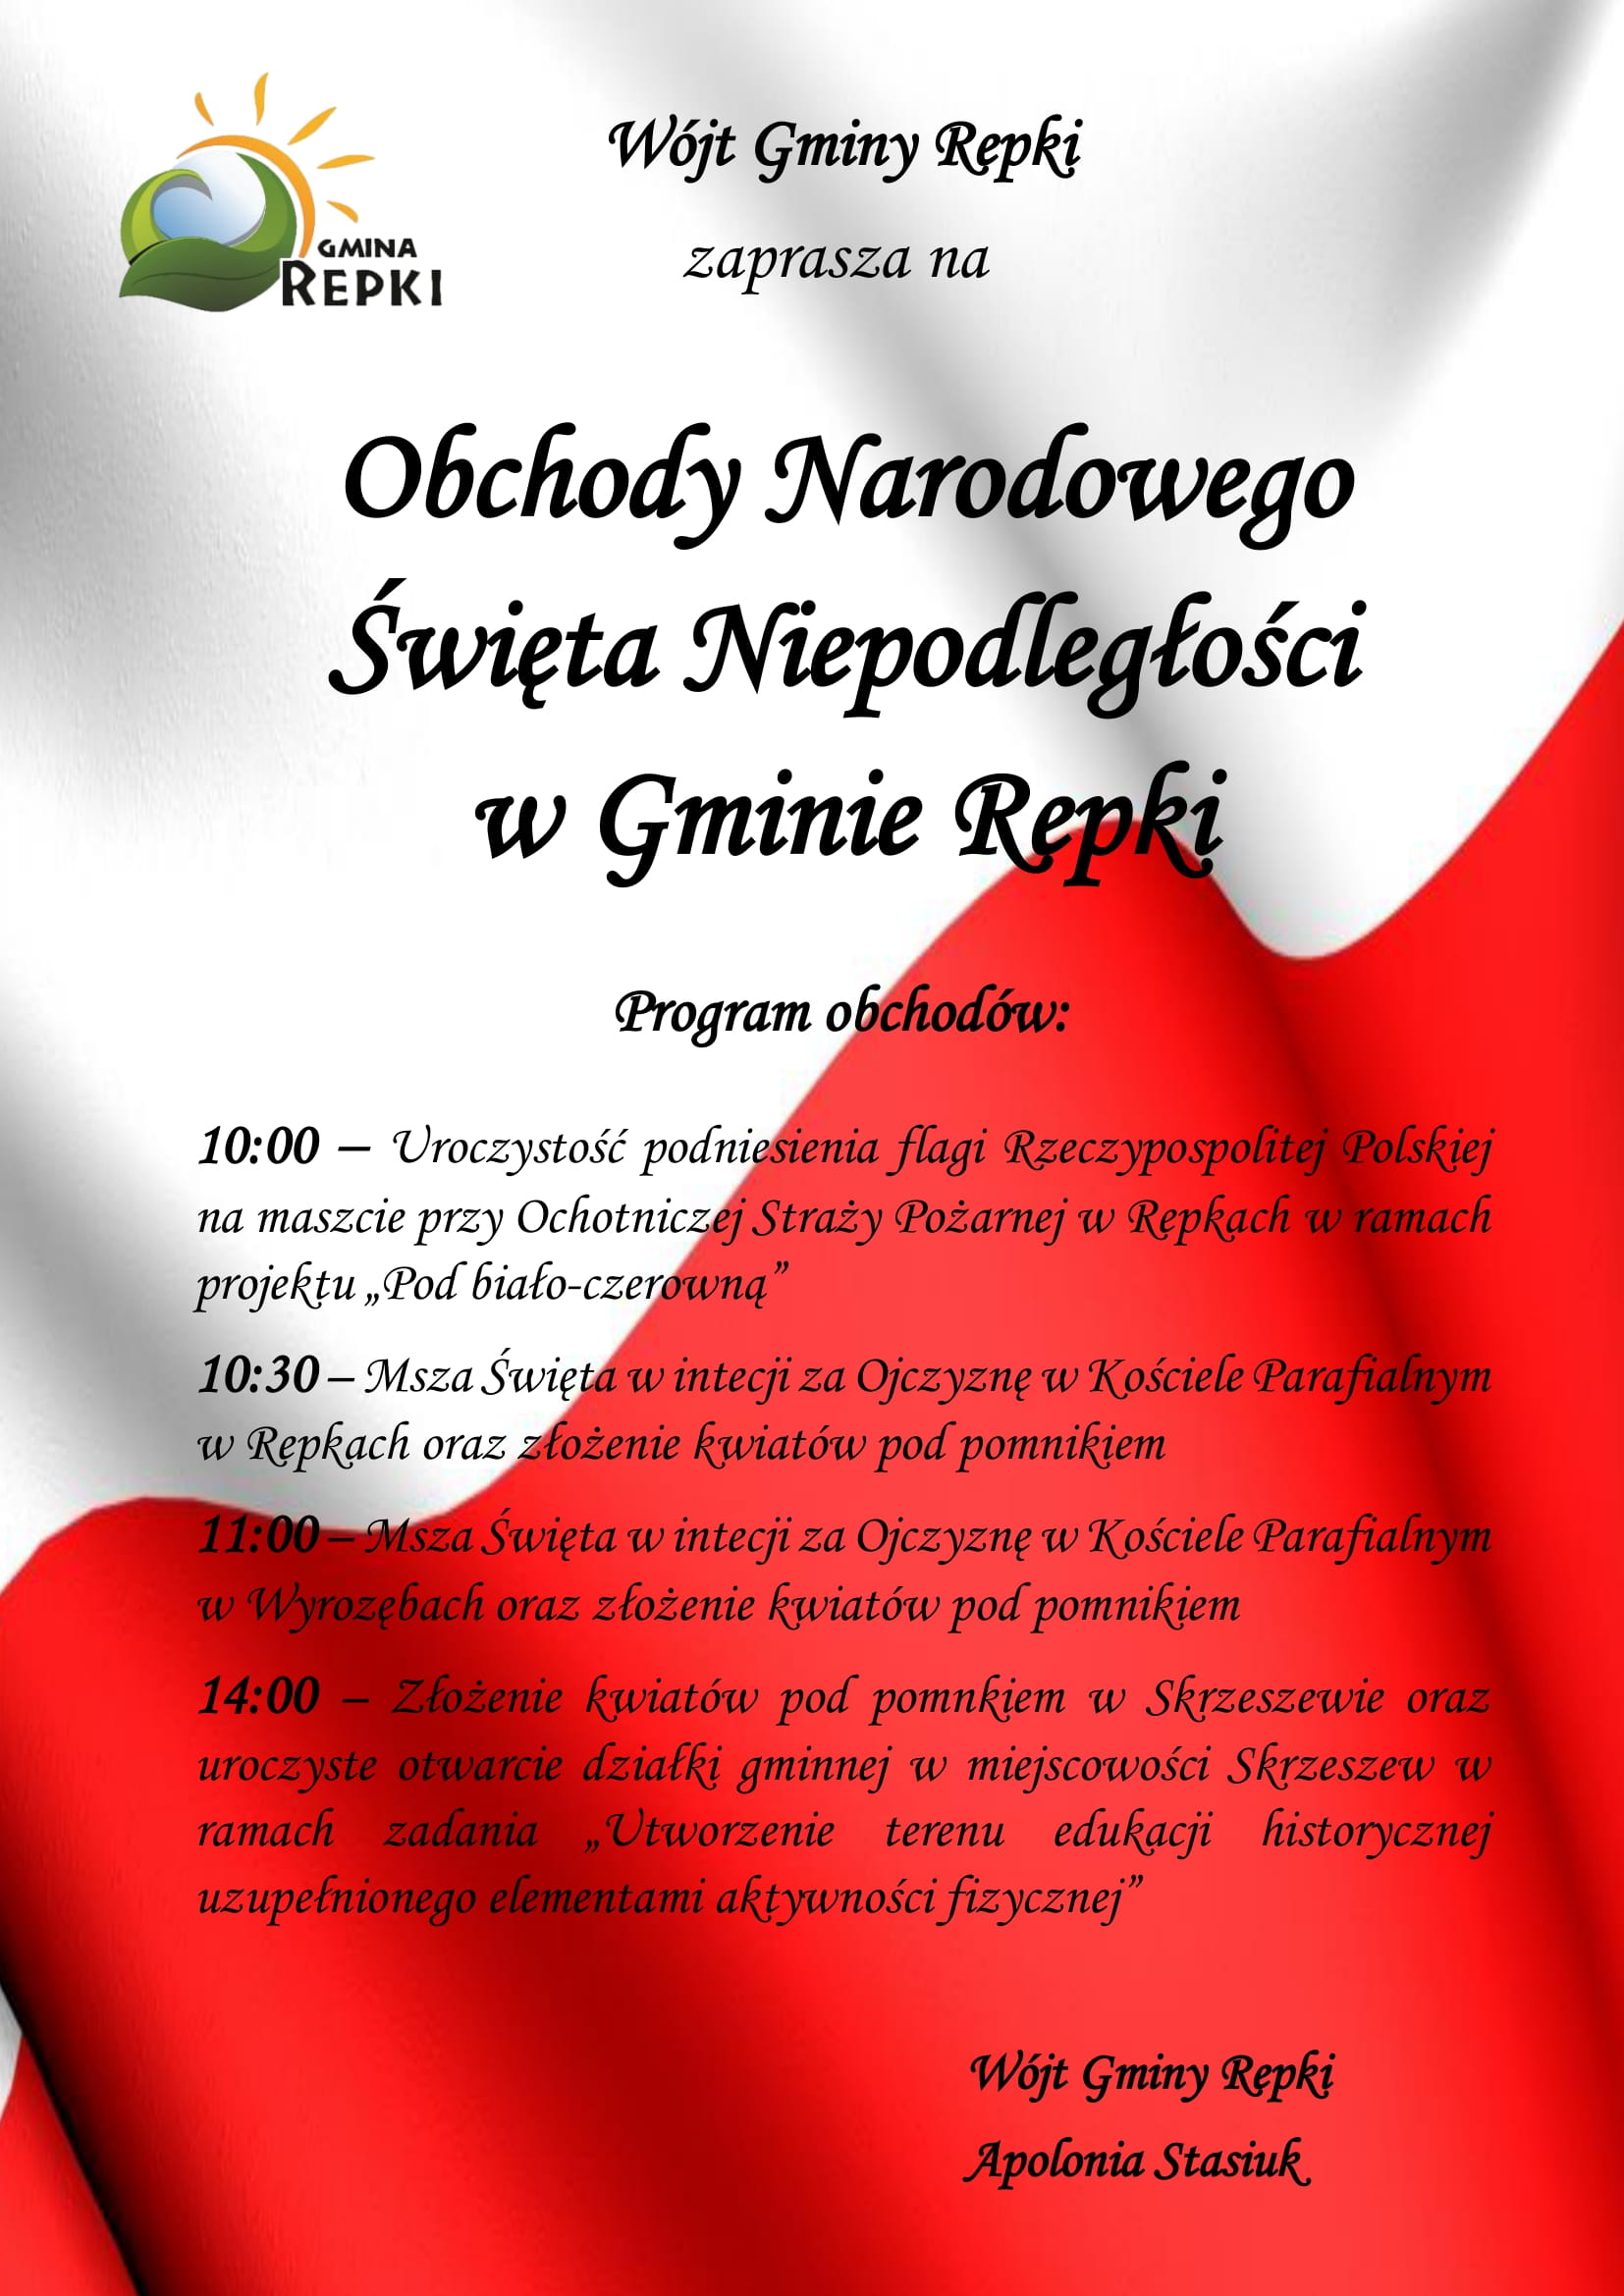 Wójt Gminy Repki zaprasza na onchody Narodowego Święta Niepodległości 11 listopada11 